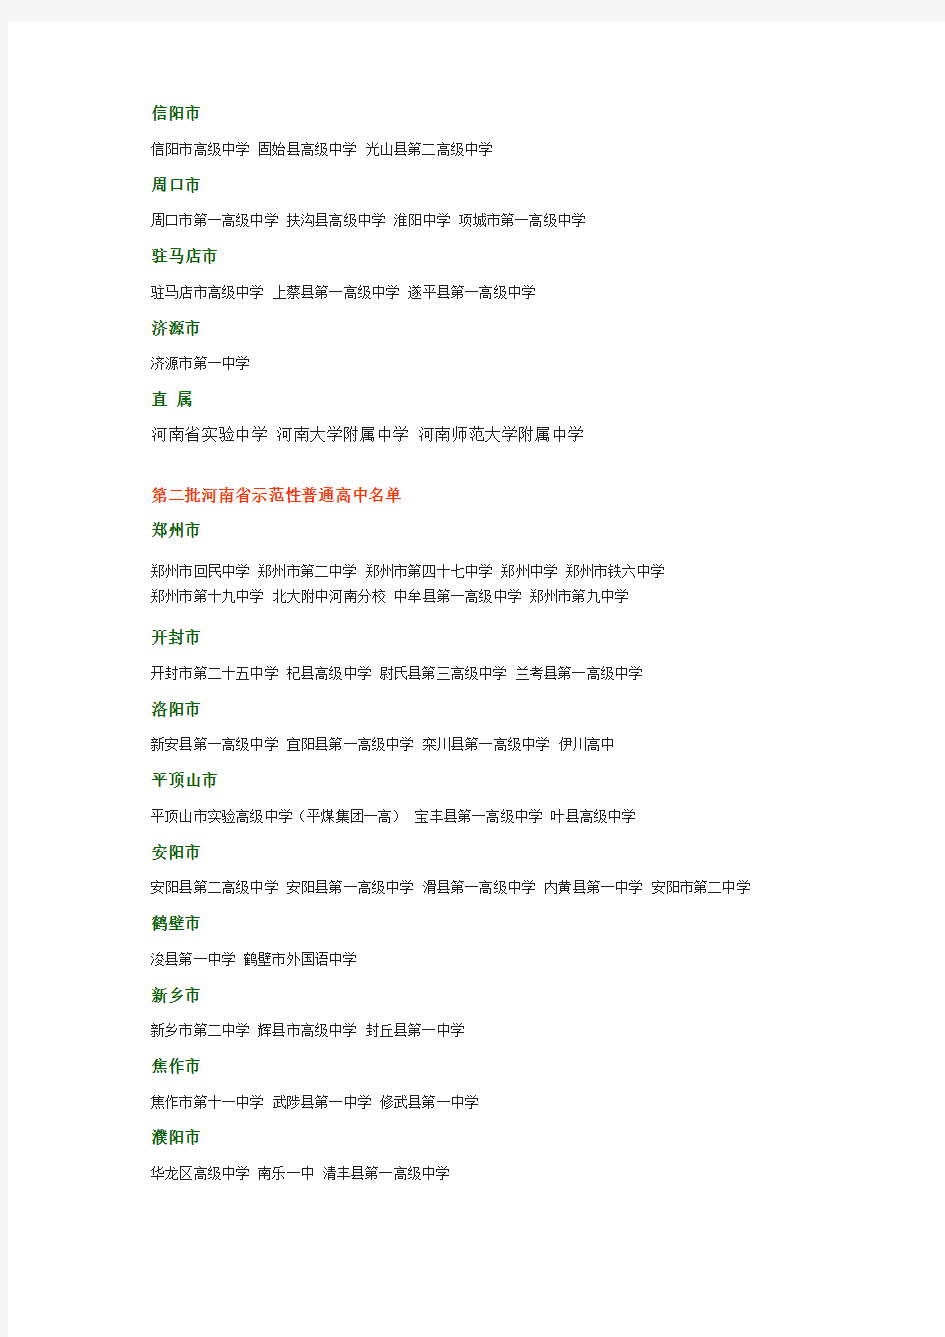 首批河南省示范性普通高中名单